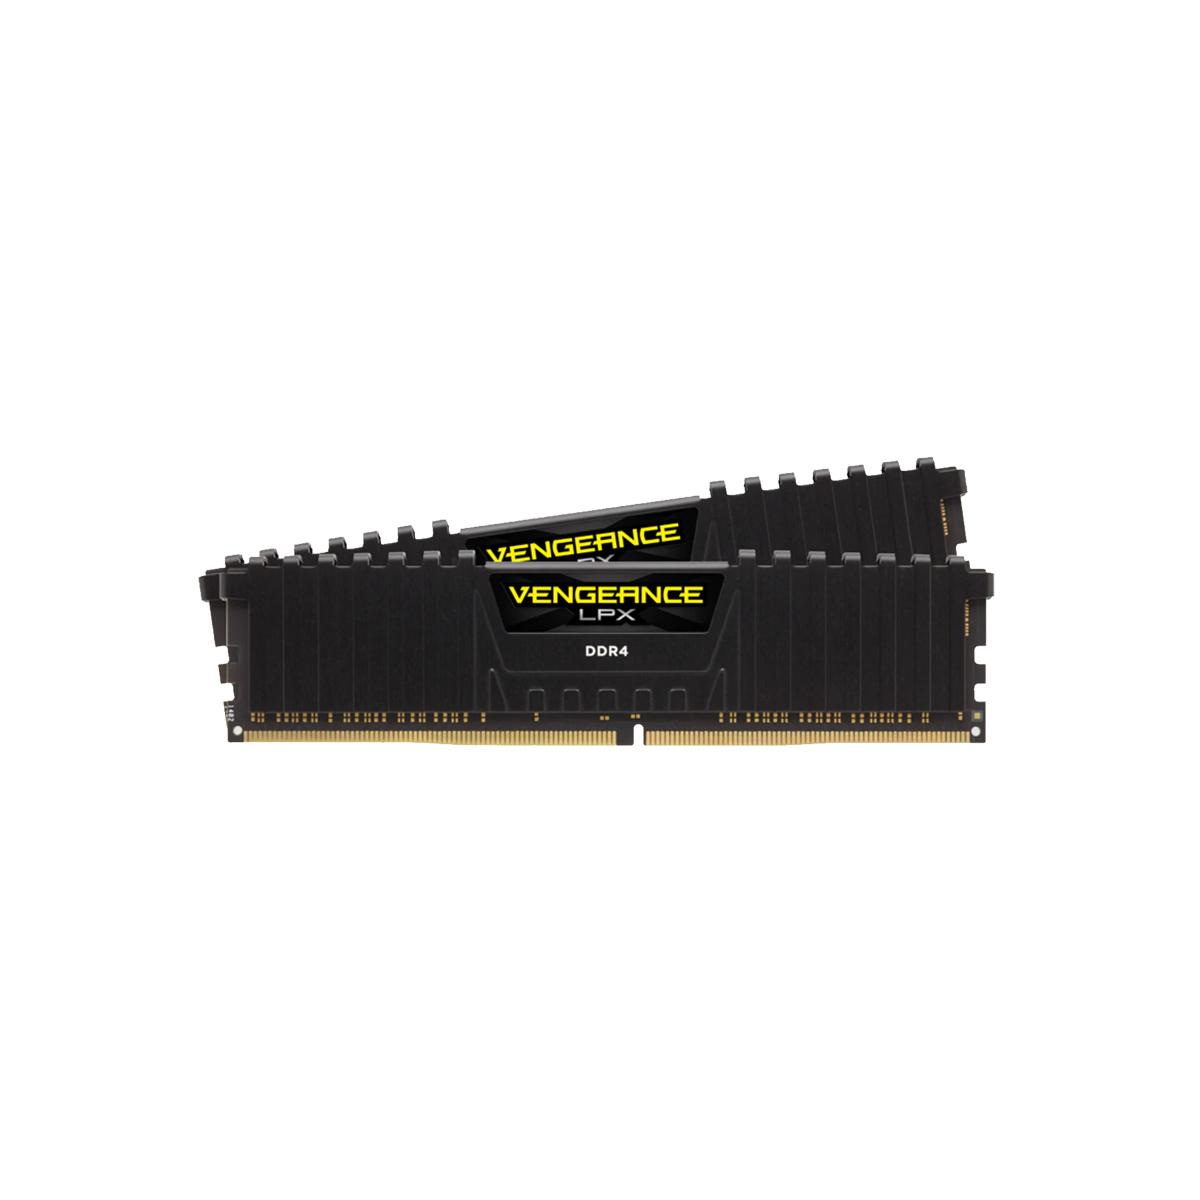 MEMORIA DIMM DDR4 CORSAIR (CMK16GX4M2C3600C20) 16GB 3600MHZ (2X8GB) VENGEANCE LPX, NEGRO - CORSAIR